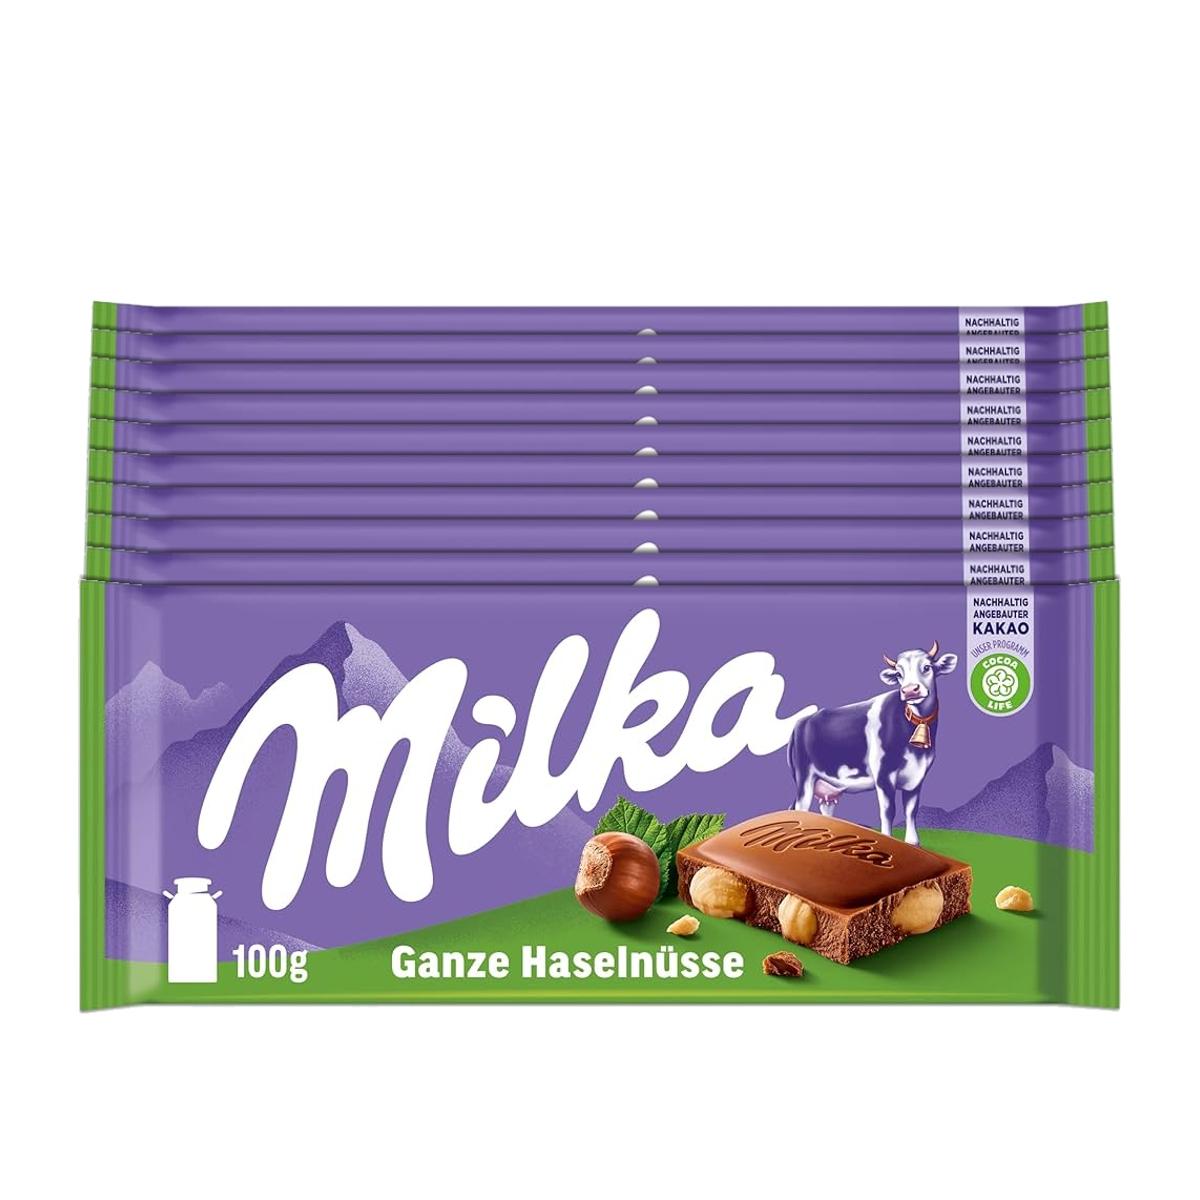 Selected image for Milka Wholenuts Čokolada sa lešnicima, 100g, 10 komada